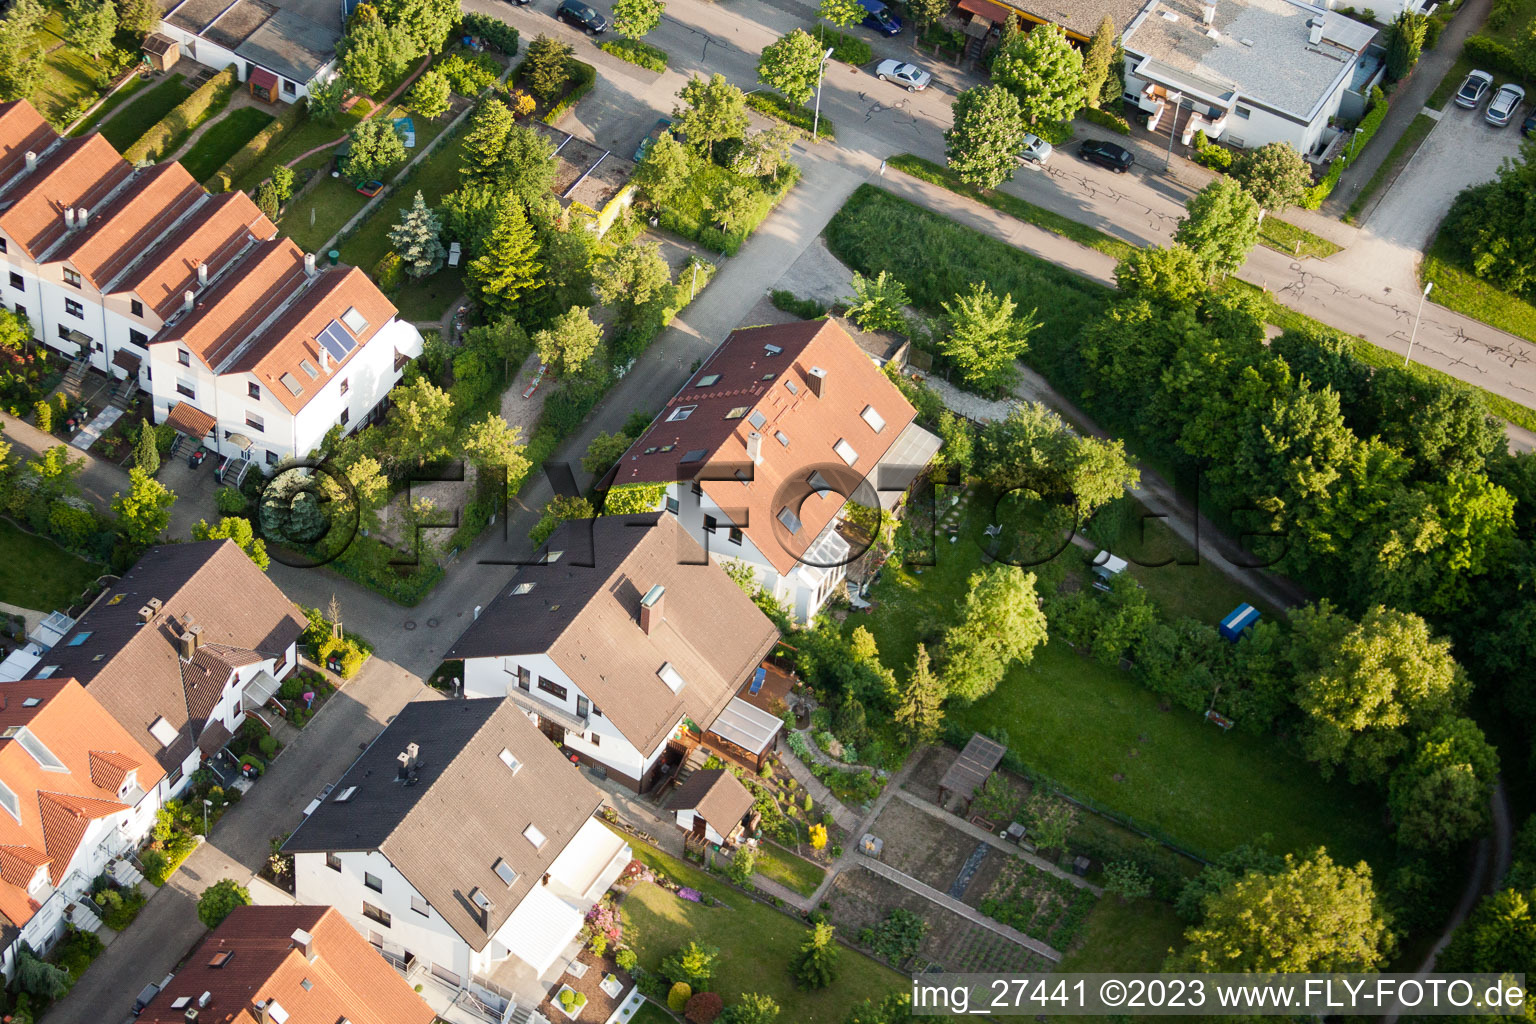 Aie à le quartier Durlach in Karlsruhe dans le département Bade-Wurtemberg, Allemagne du point de vue du drone